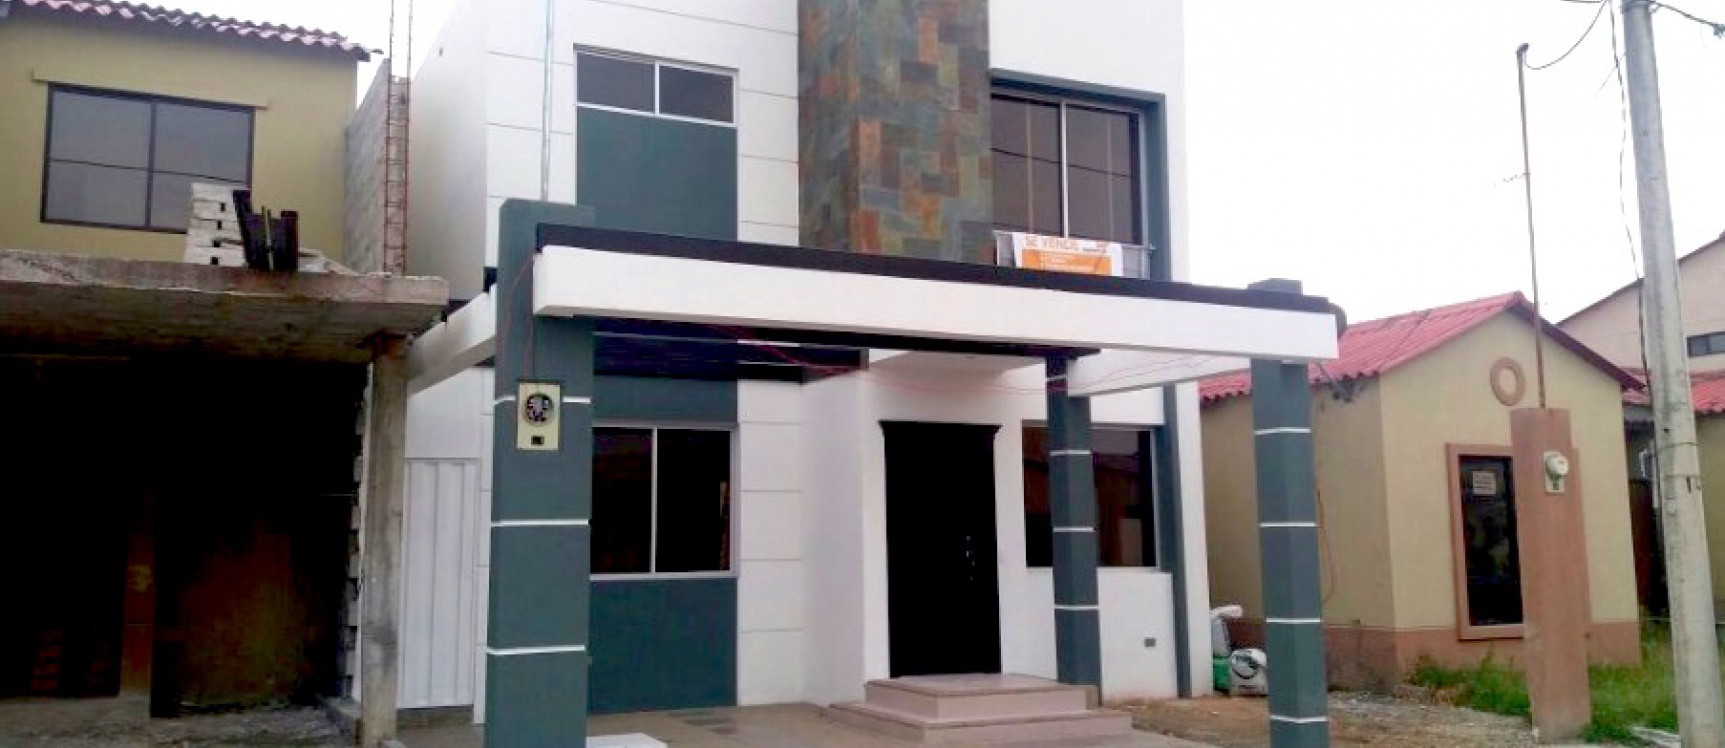 GeoBienes - Casa de Venta en Villaclub, Samborondón. Con acabados de lujo y nueva tecnología en construcción - Plusvalia Guayaquil Casas de venta y alquiler Inmobiliaria Ecuador